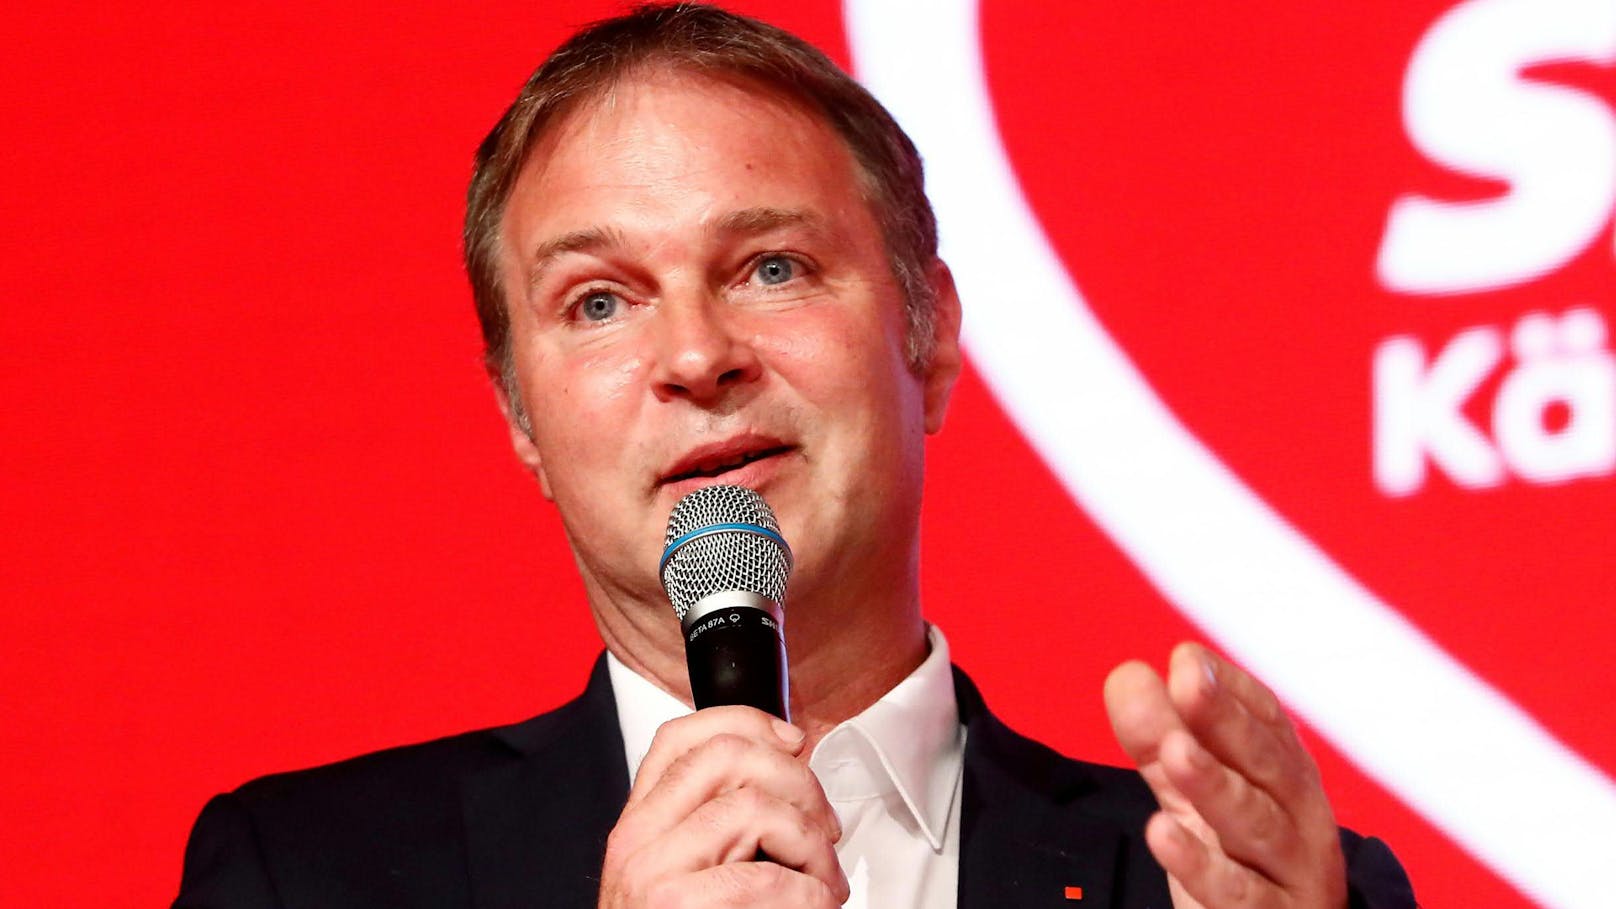 Andreas Babler gilt als Vertreter des linken Flügels der SPÖ. 